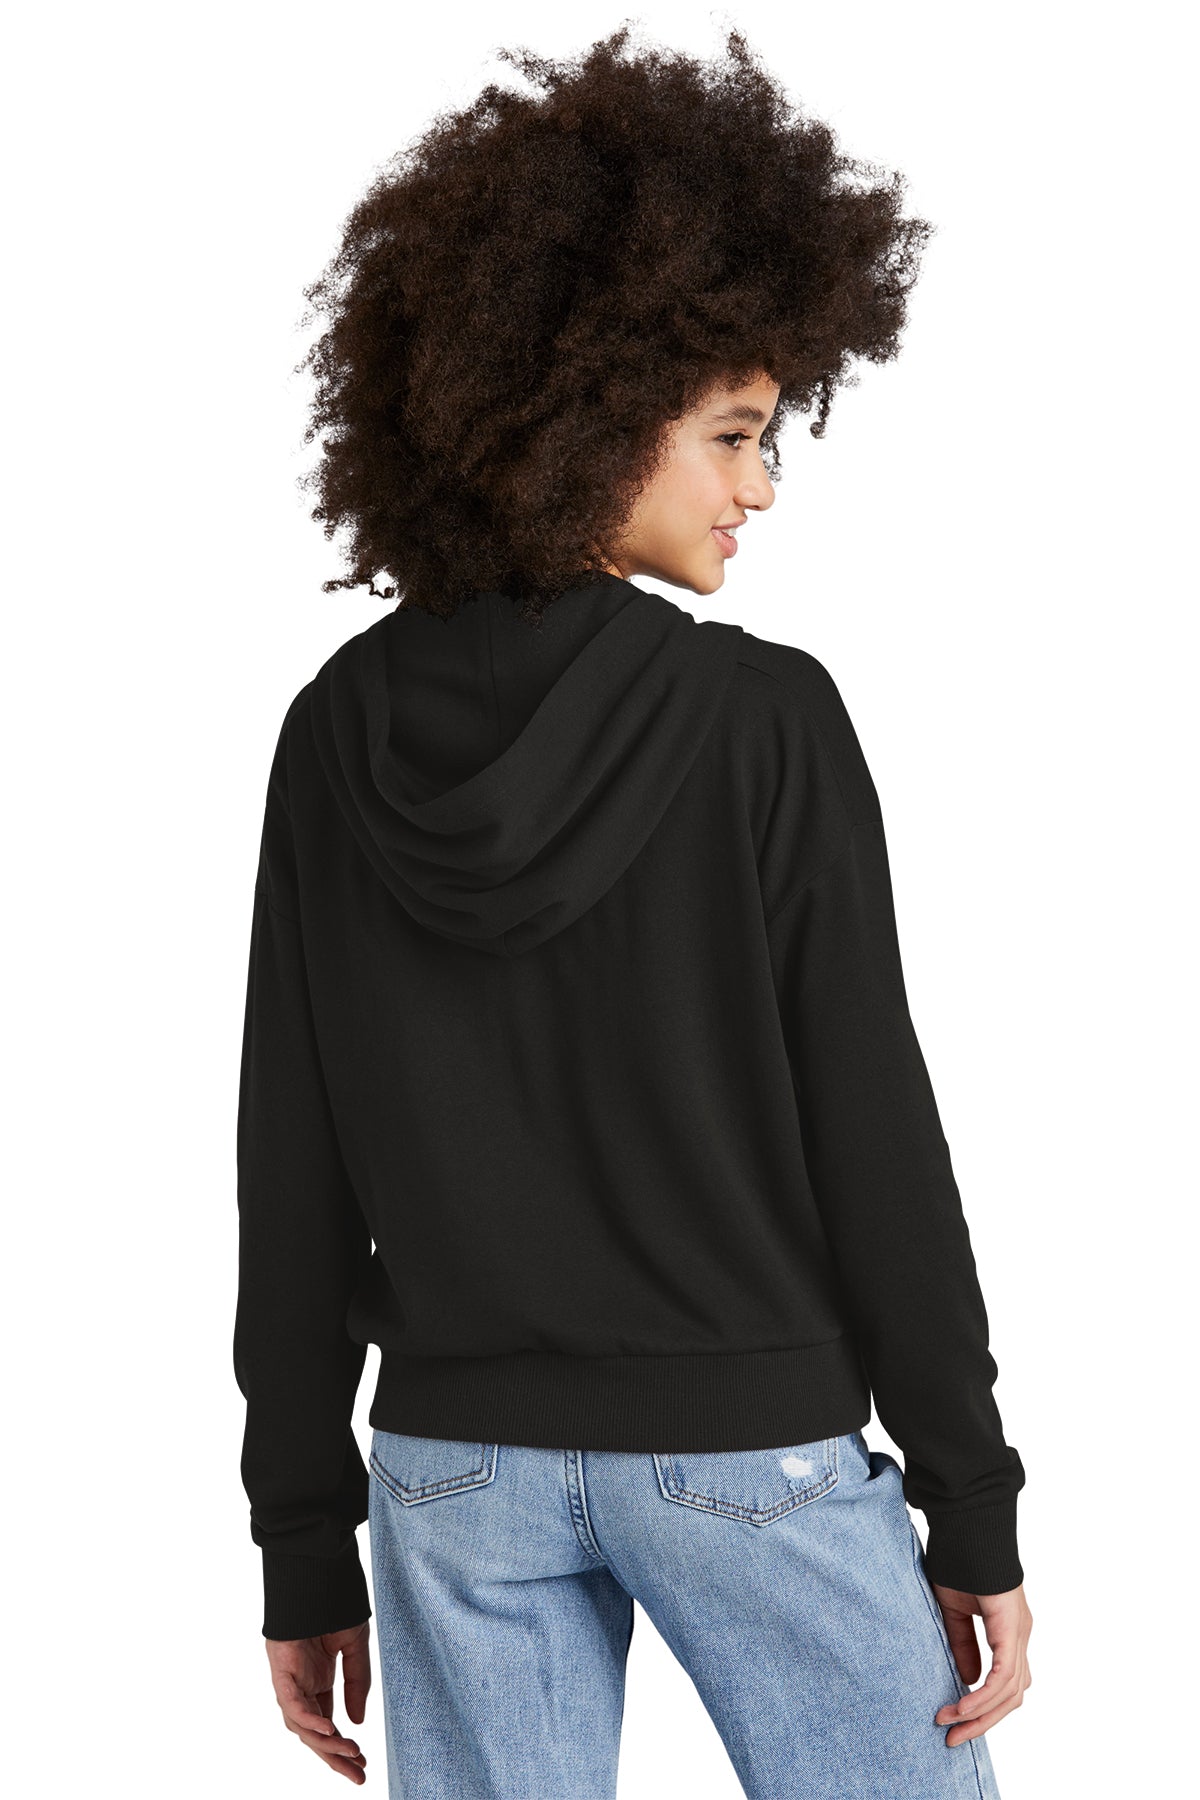 District® Women’s Perfect Tri® Fleece 1/2-Zip Pullover